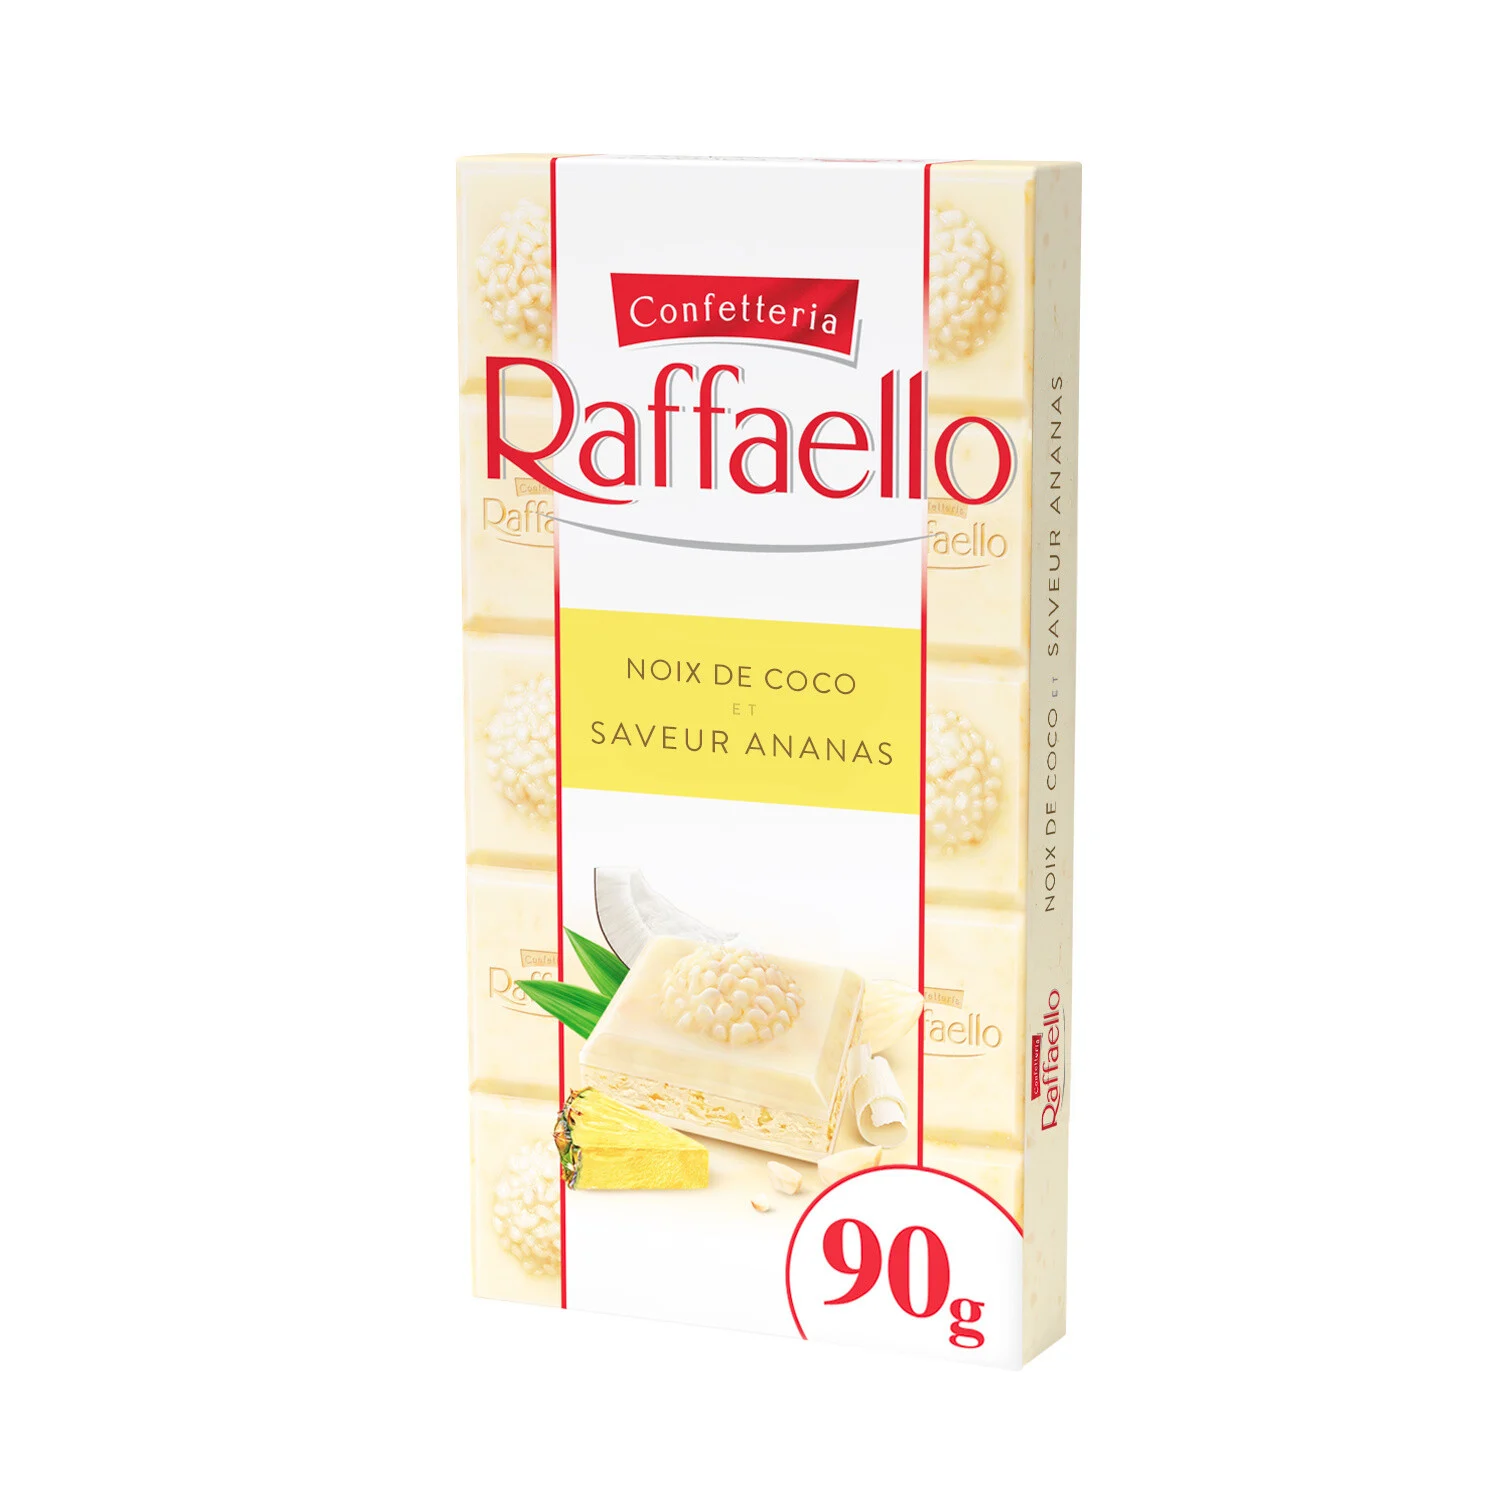 Tableta de piña Raffaello de 90 g